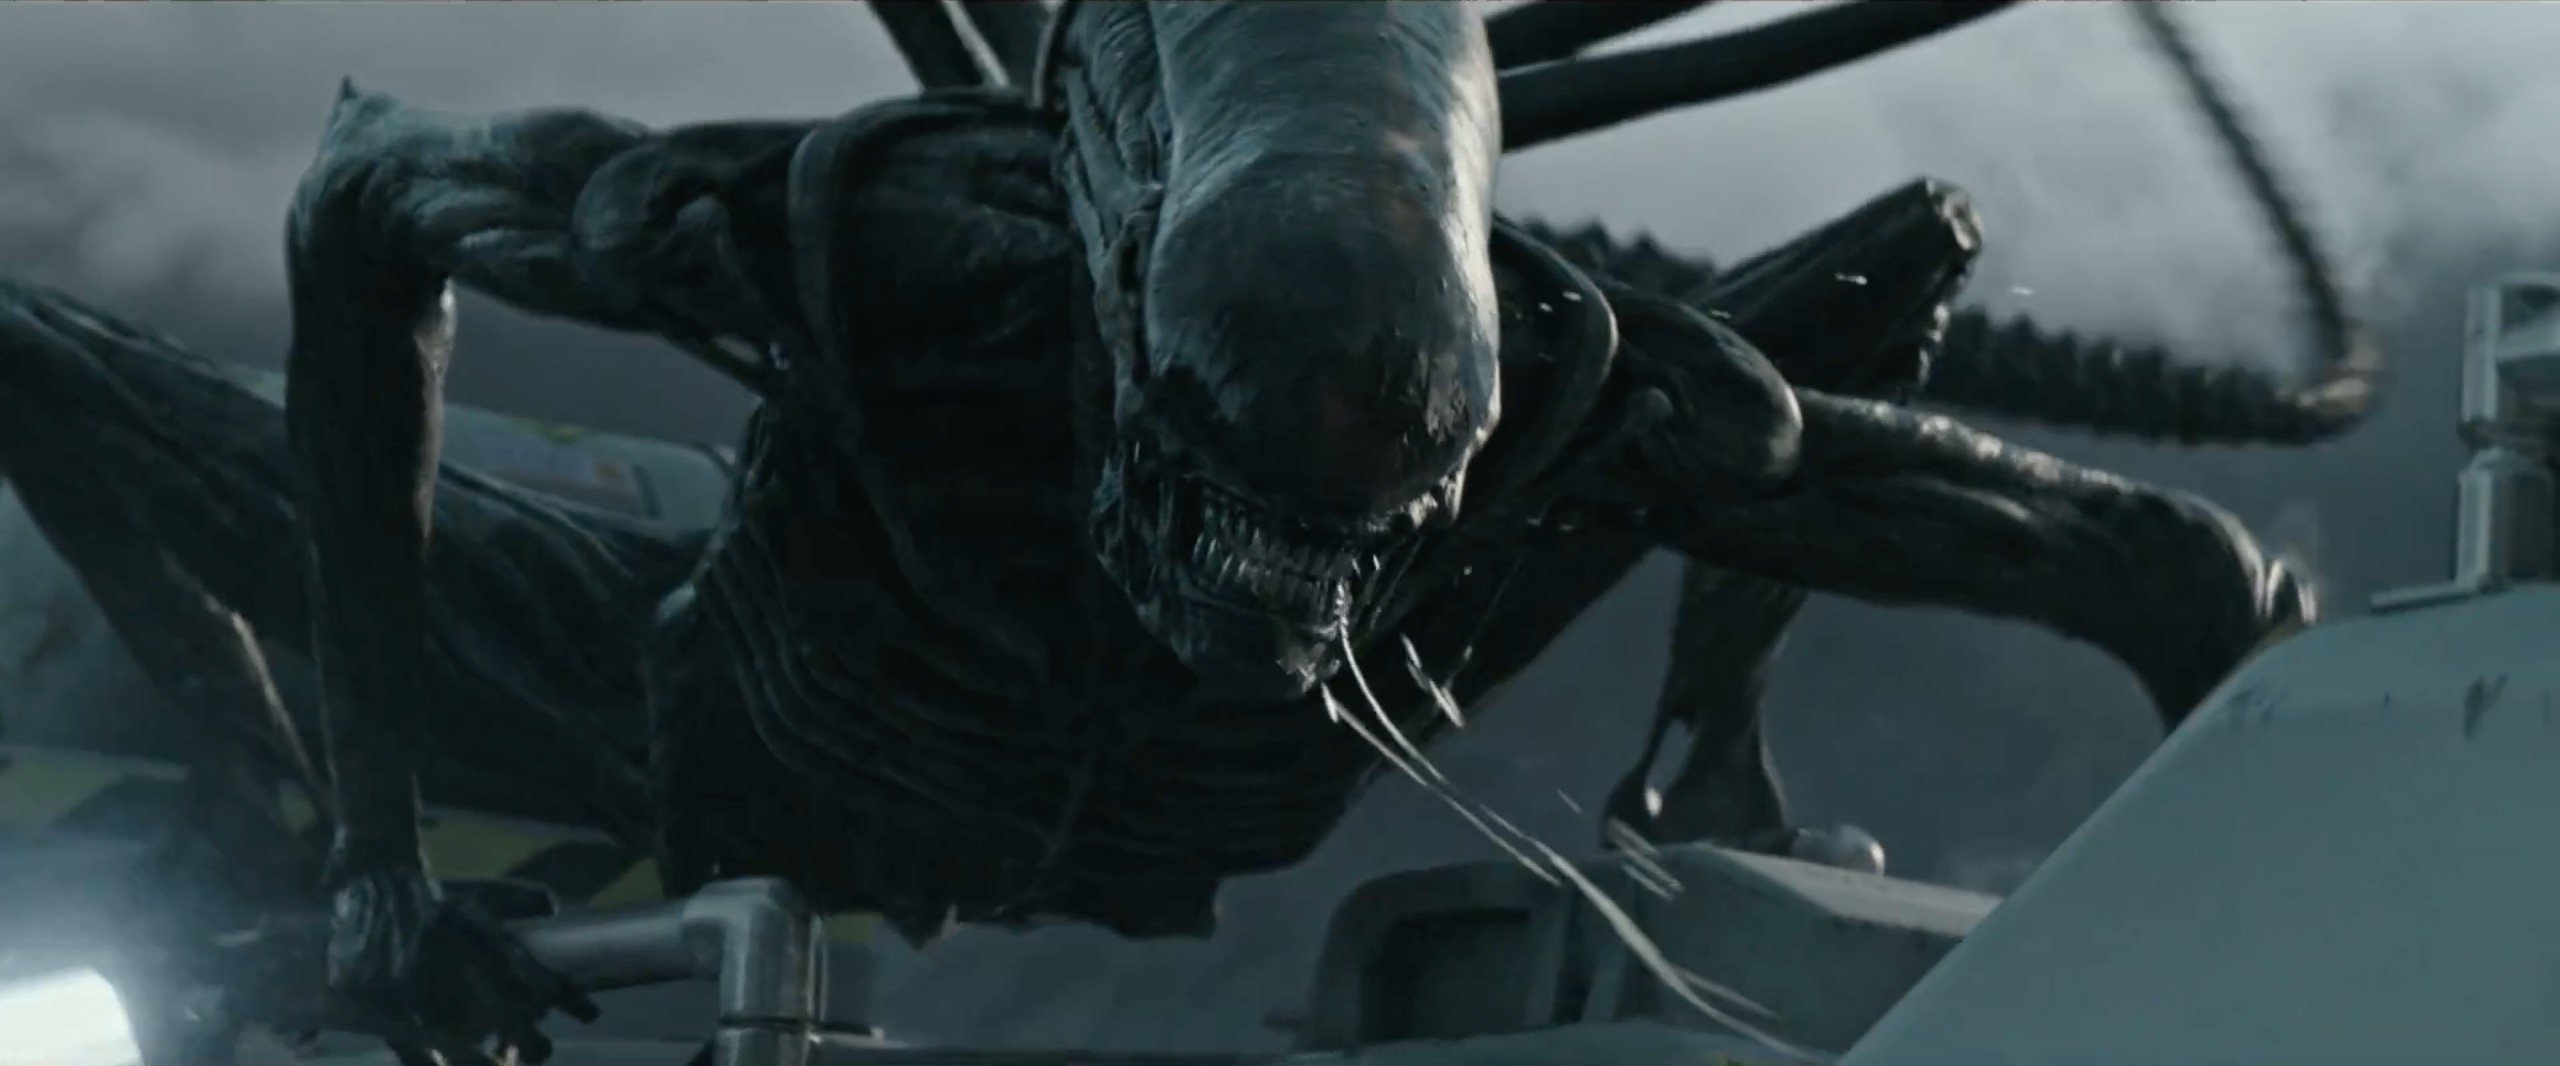 alien convenant box office